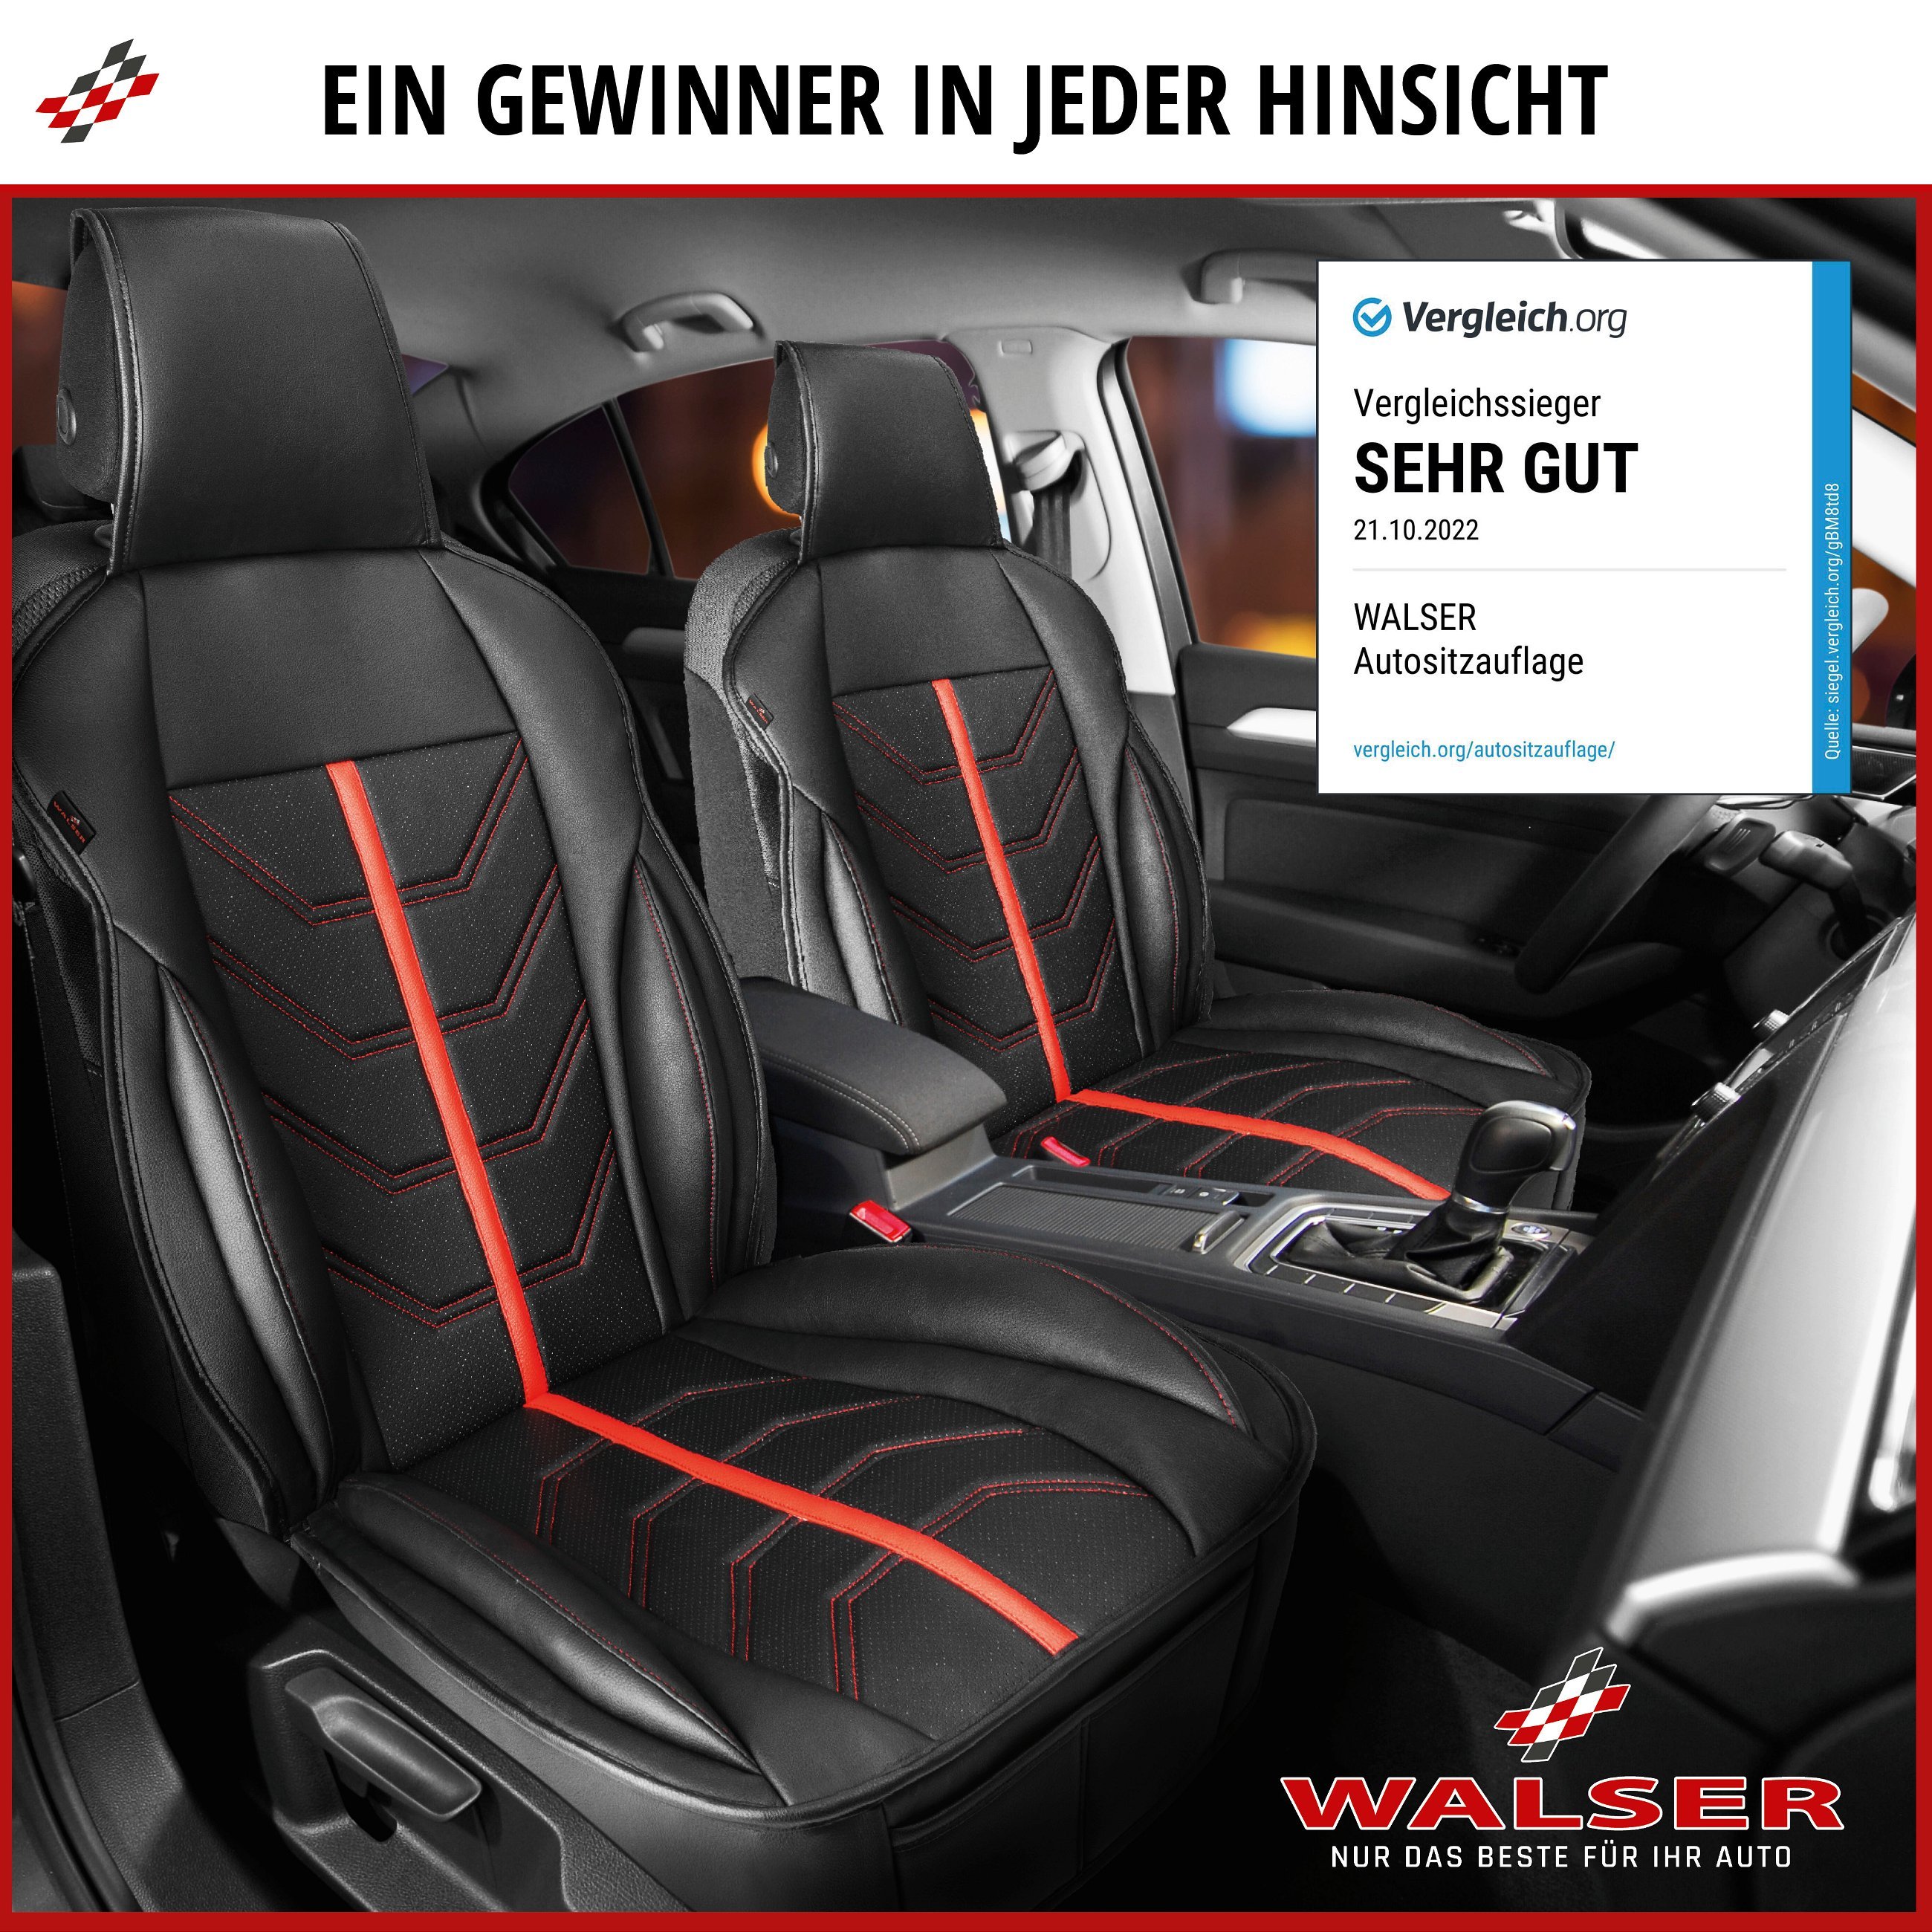 PKW Sitzauflage Kimi, Auto-Sitzaufleger im Rennsportdesign schwarz/silber